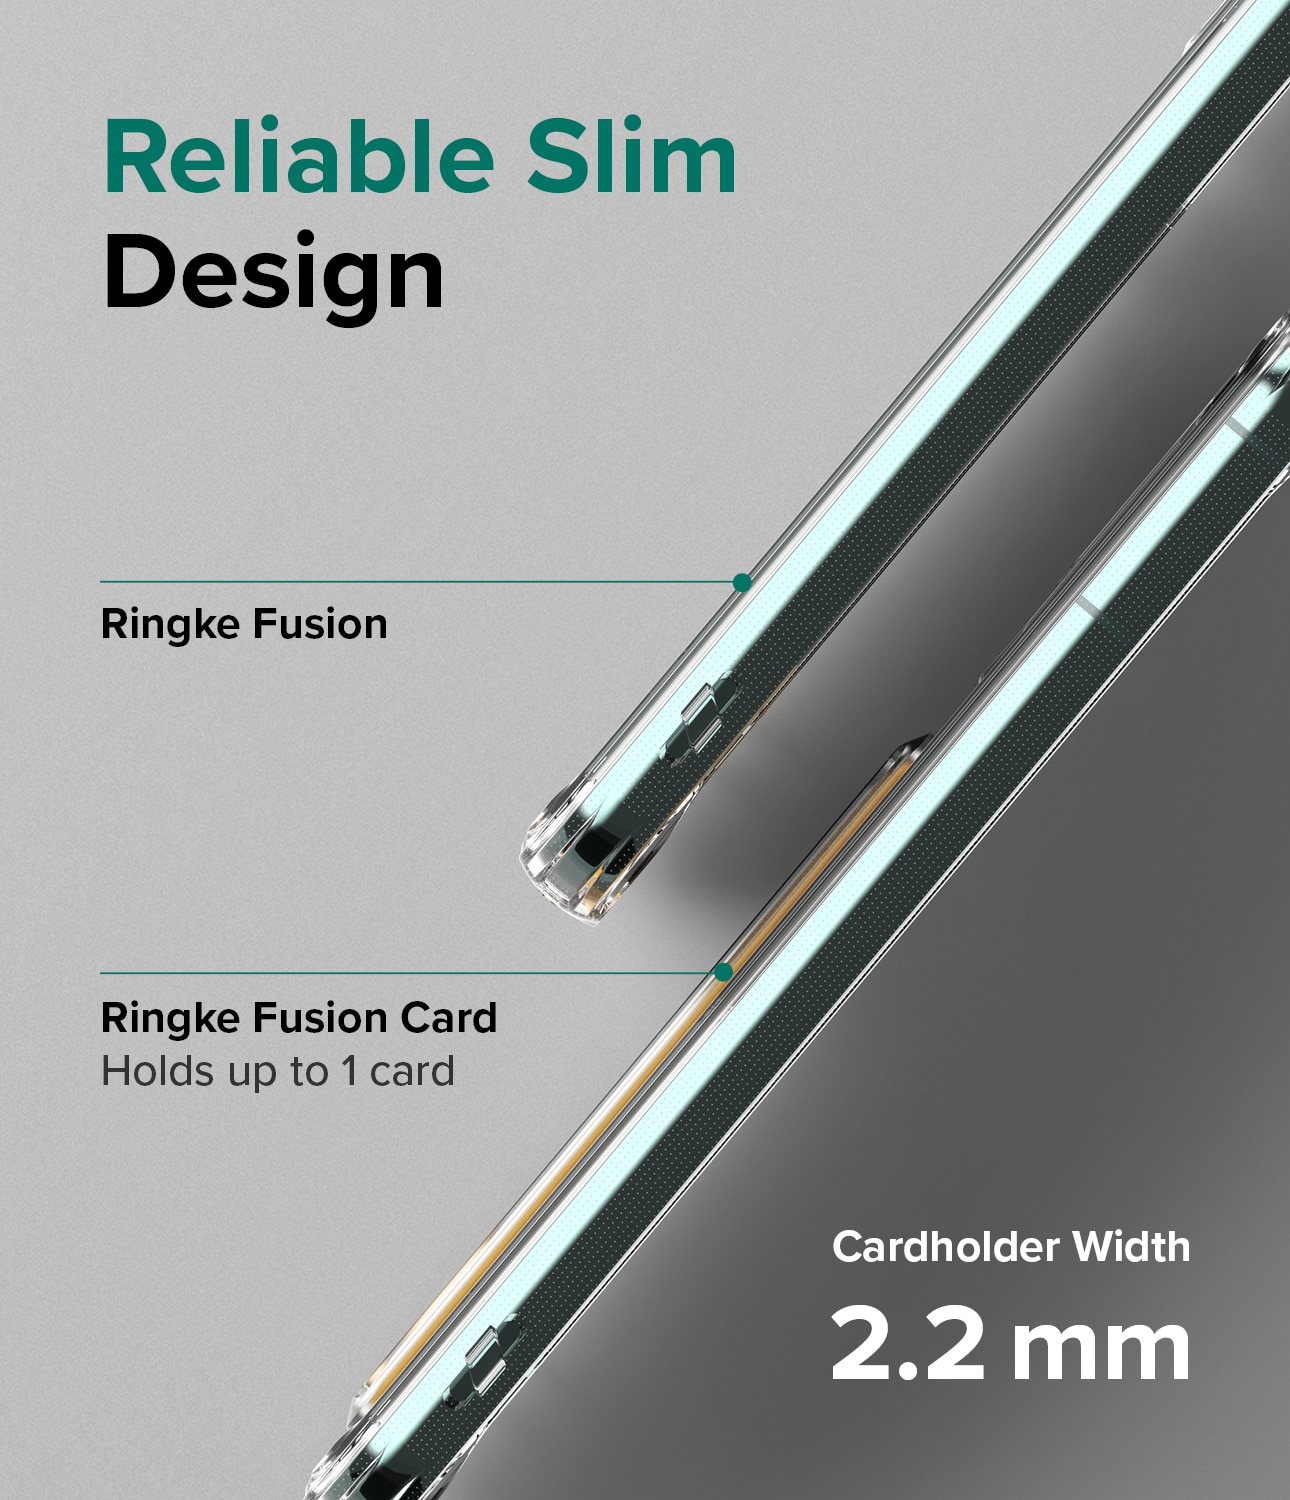 Funda Fusion Card Samsung Galaxy S22 Plus Clear